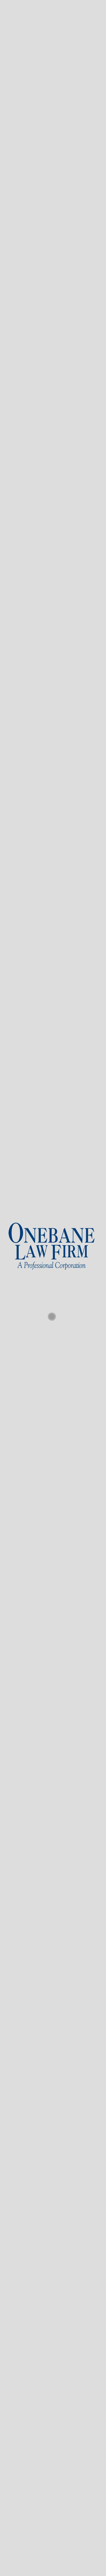 Onebane Law Firm - Shreveport LA Lawyers